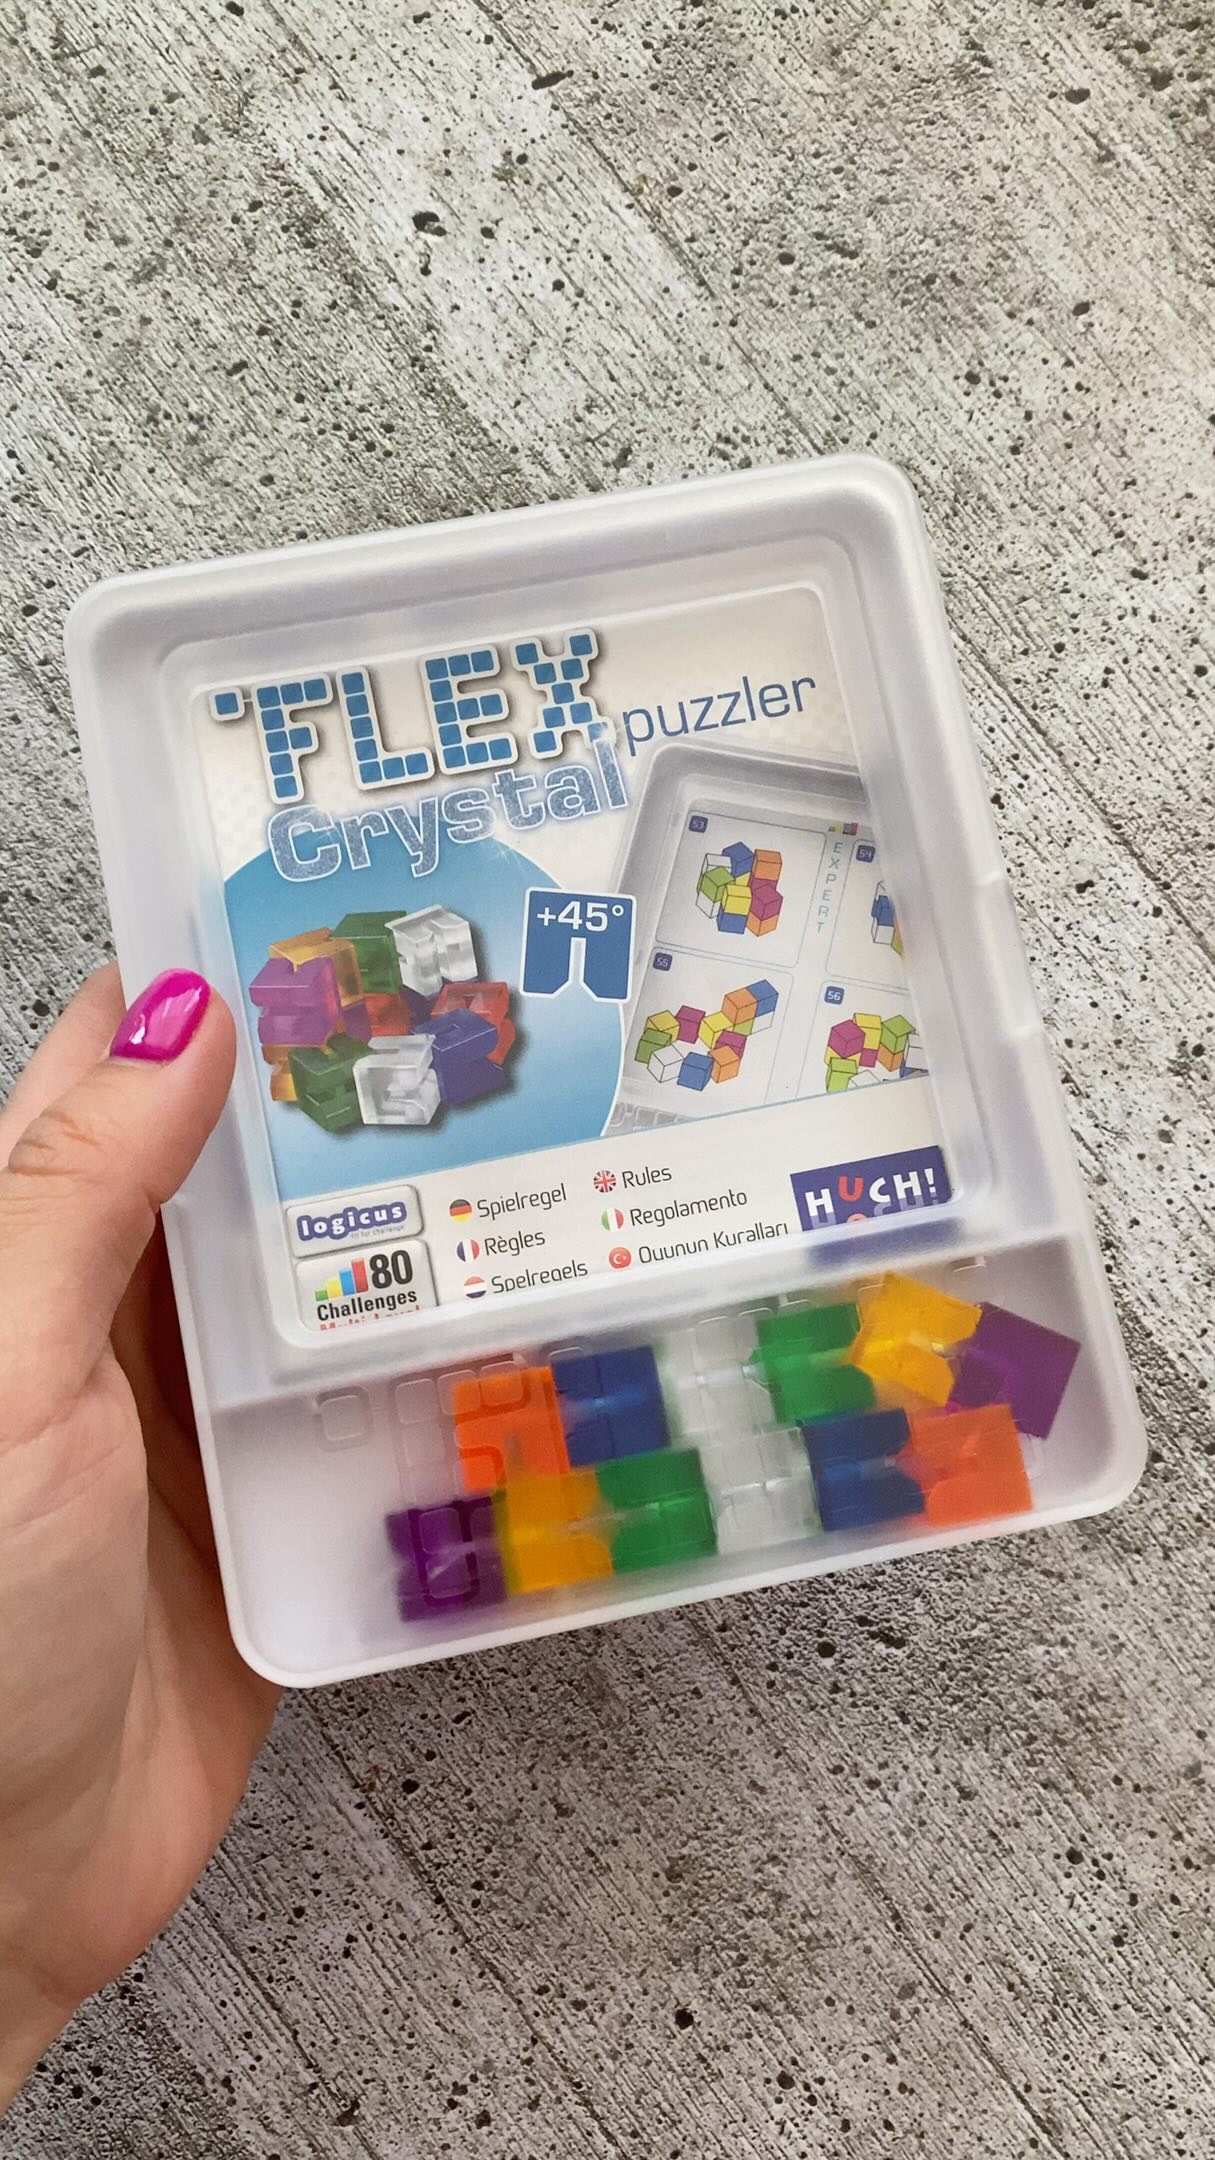 Flex Puzzler Crystal este un puzzle mecanic cu 80 de provocări în 2D și 3D, potrivit pentru copiii cu vârste peste 7 ani. Vă garantez că este interesant și pentru adulți. Nu degeaba limita de vârstă este 99 de ani. 😊

🟡🔴🔵🟢

Ce conține? 

⚪️ un lanț cu 12 cuburi colorate translucide 
⚪️ 1 carte cu 80 de provocări împărțite în funcție de dificultate
⚪️ 1 carte cu rezolvări
⚪️ 1 cutie pentru depozitarea/transportarea cuburilor și cărticelelor

🟡🟢🔵🔴

Principiul jocului

Flex Puzzler Crystal este un lanț cu 12 cuburi colorate translucide care pot fi orientate și pliate în orice direcție la 45 sau 90 de grade.

Conține provocări suplimentare care pot fi rezolvate în combinație cu Flex Puzzler și Flex Puzzler XL (noi nu le avem). 

🟢🔴🟡🔵

Pros & Cons

➕ Raport foarte bun calitate-preț (sub 50 ron).
➕ Lanțul cu cuburi este ușor de manevrat. 
➕ Este un joc compact, ușor de transportat. Cutia dintr-un plastic solid este un mare plus. 

➖ N-am găsit încă. 😊

🔴🟡🟢🔵

Cum contribuie la dezvoltarea copilului? 
🔸 dezvoltă logica și perspectiva spațială
🔸 stimulează concentrarea

—————————
Acest reel face parte din rubrica #JocurileAntoniei unde intenționez să vă aduc mici recenzii/prezentări de jocuri și jucării testate de noi. 
—————————
#huchgames #flexpuzzler #puzzle #boardgamesforkids #kidsgames #puzzle mecanic #jucarii #jocurieducative #jucariieducative #joaca #cadouricopii #nejucamsiinvatam #activitaticopii #activitatiinfamilie #dezvoltareacopiilor #flaviah 
@huch_games